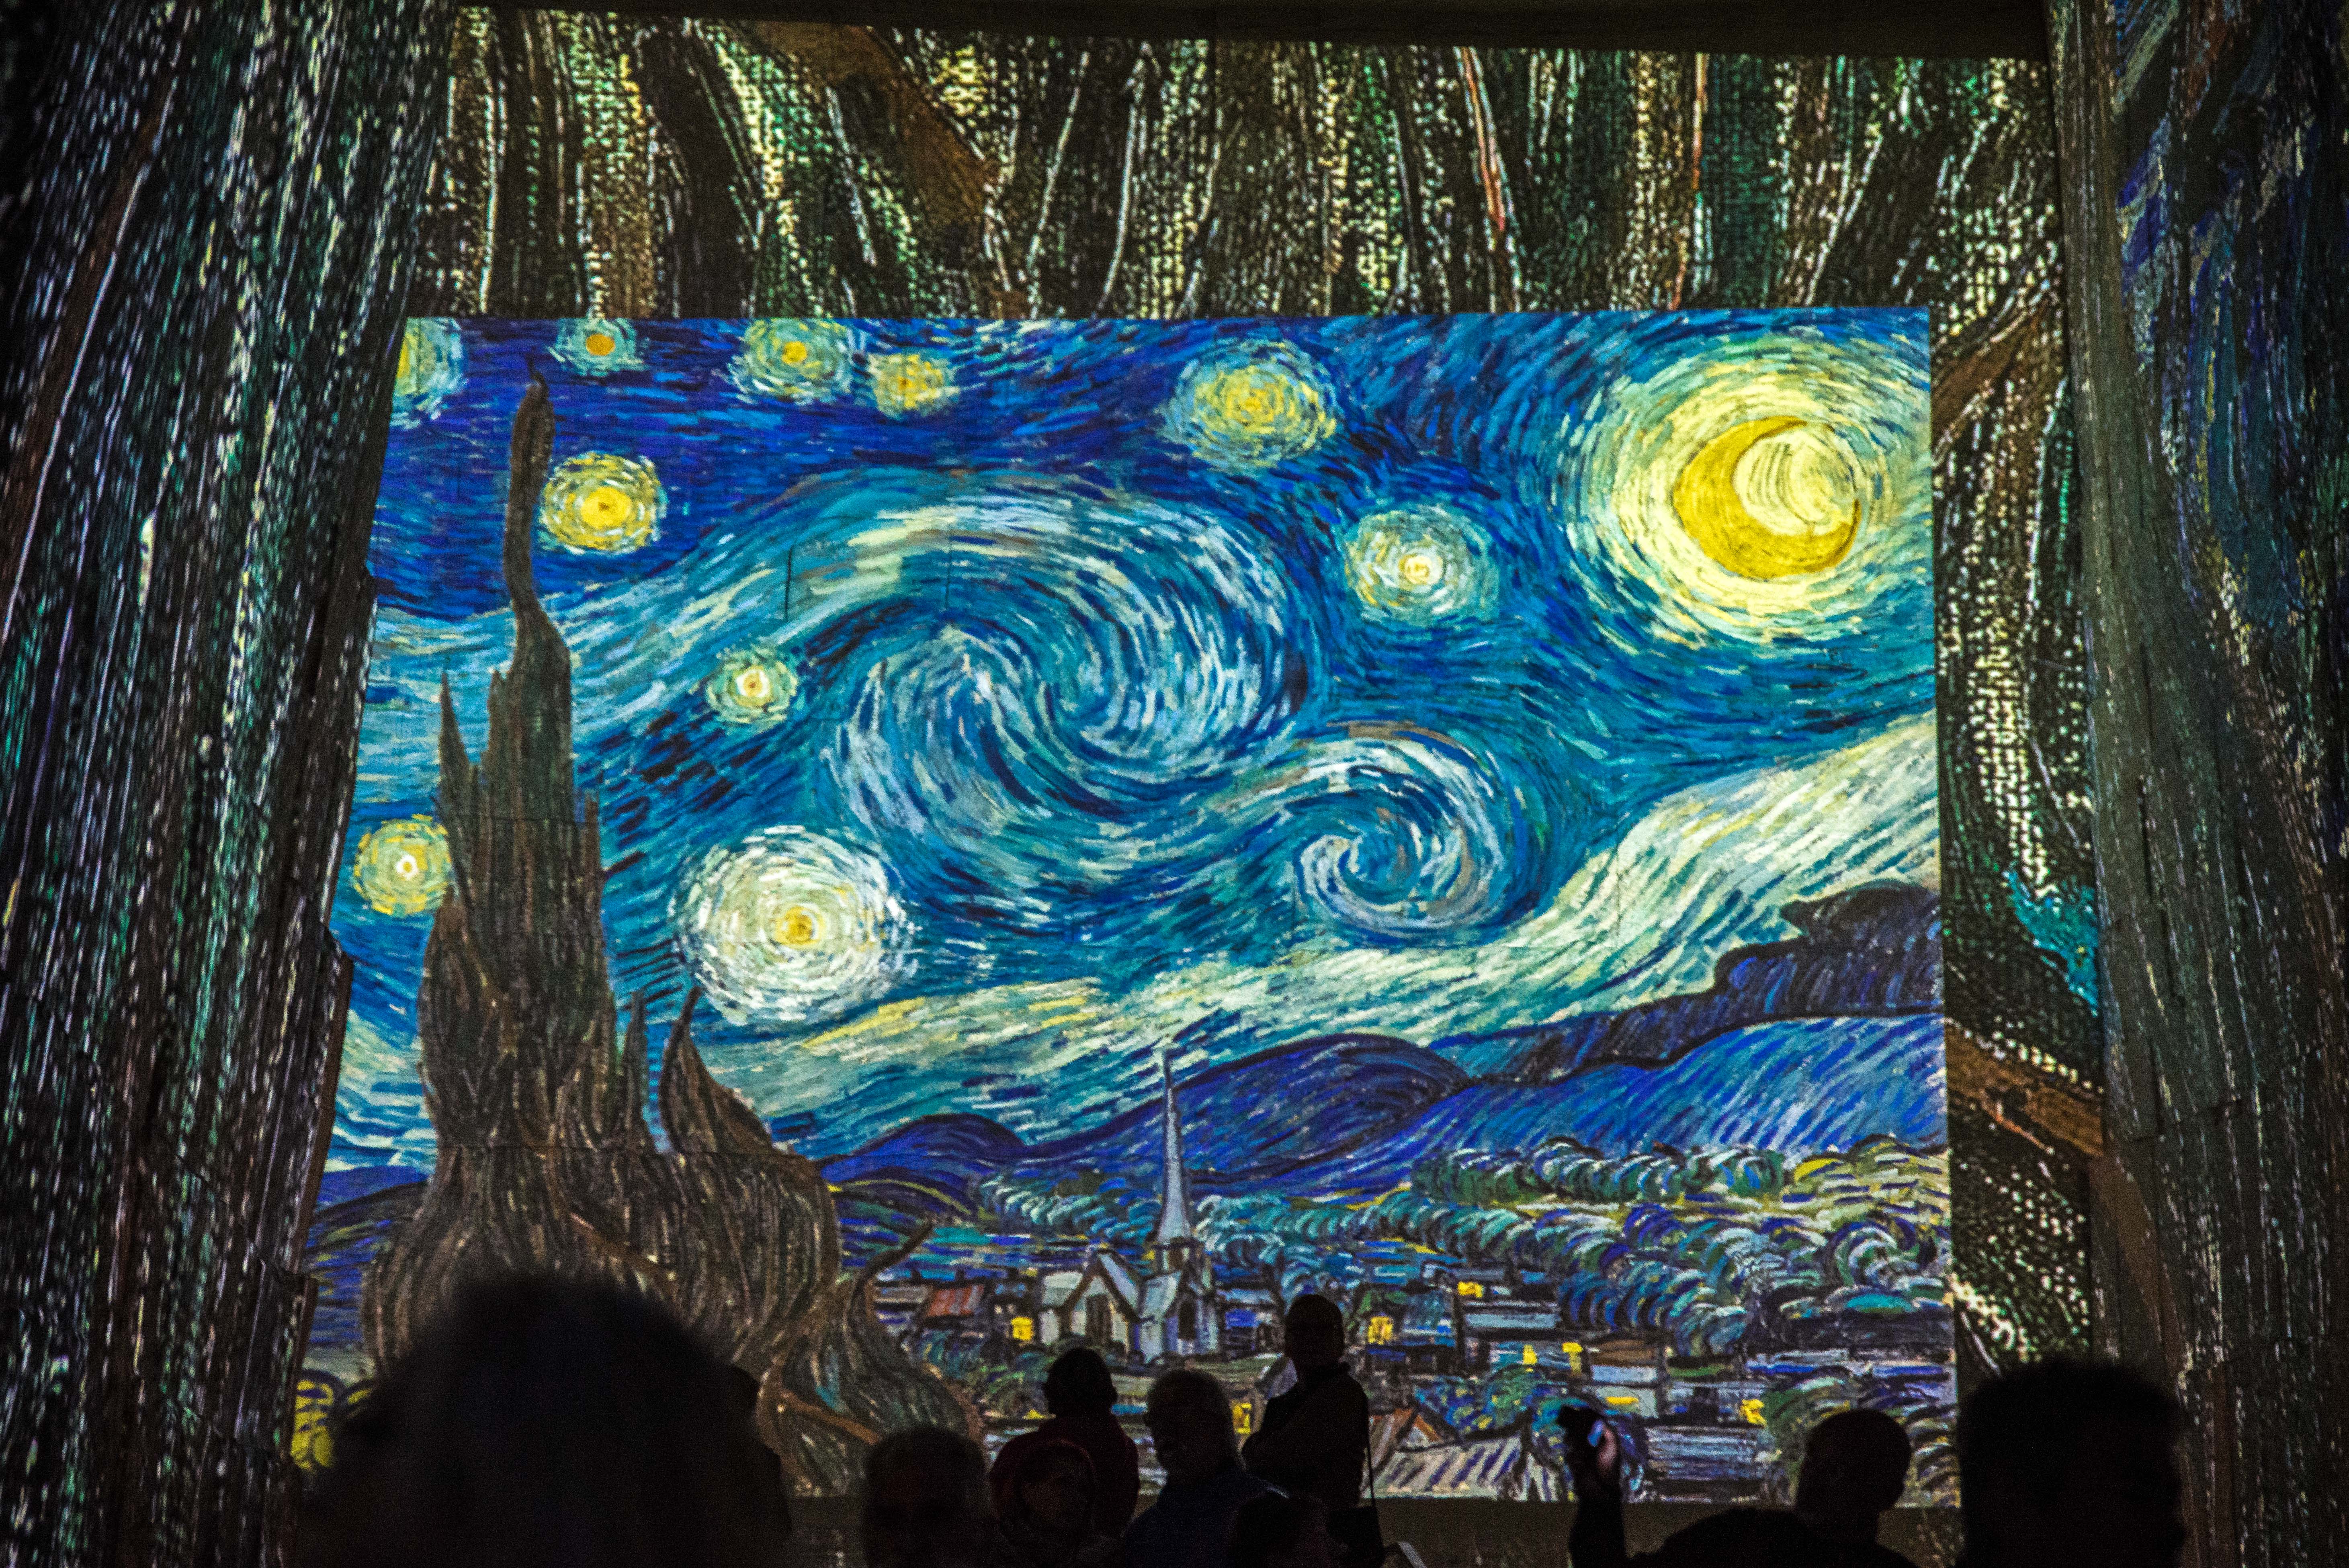  van Gogh carrières de lumières baux de provence alpes cote dazur blogvoyage icietlabas